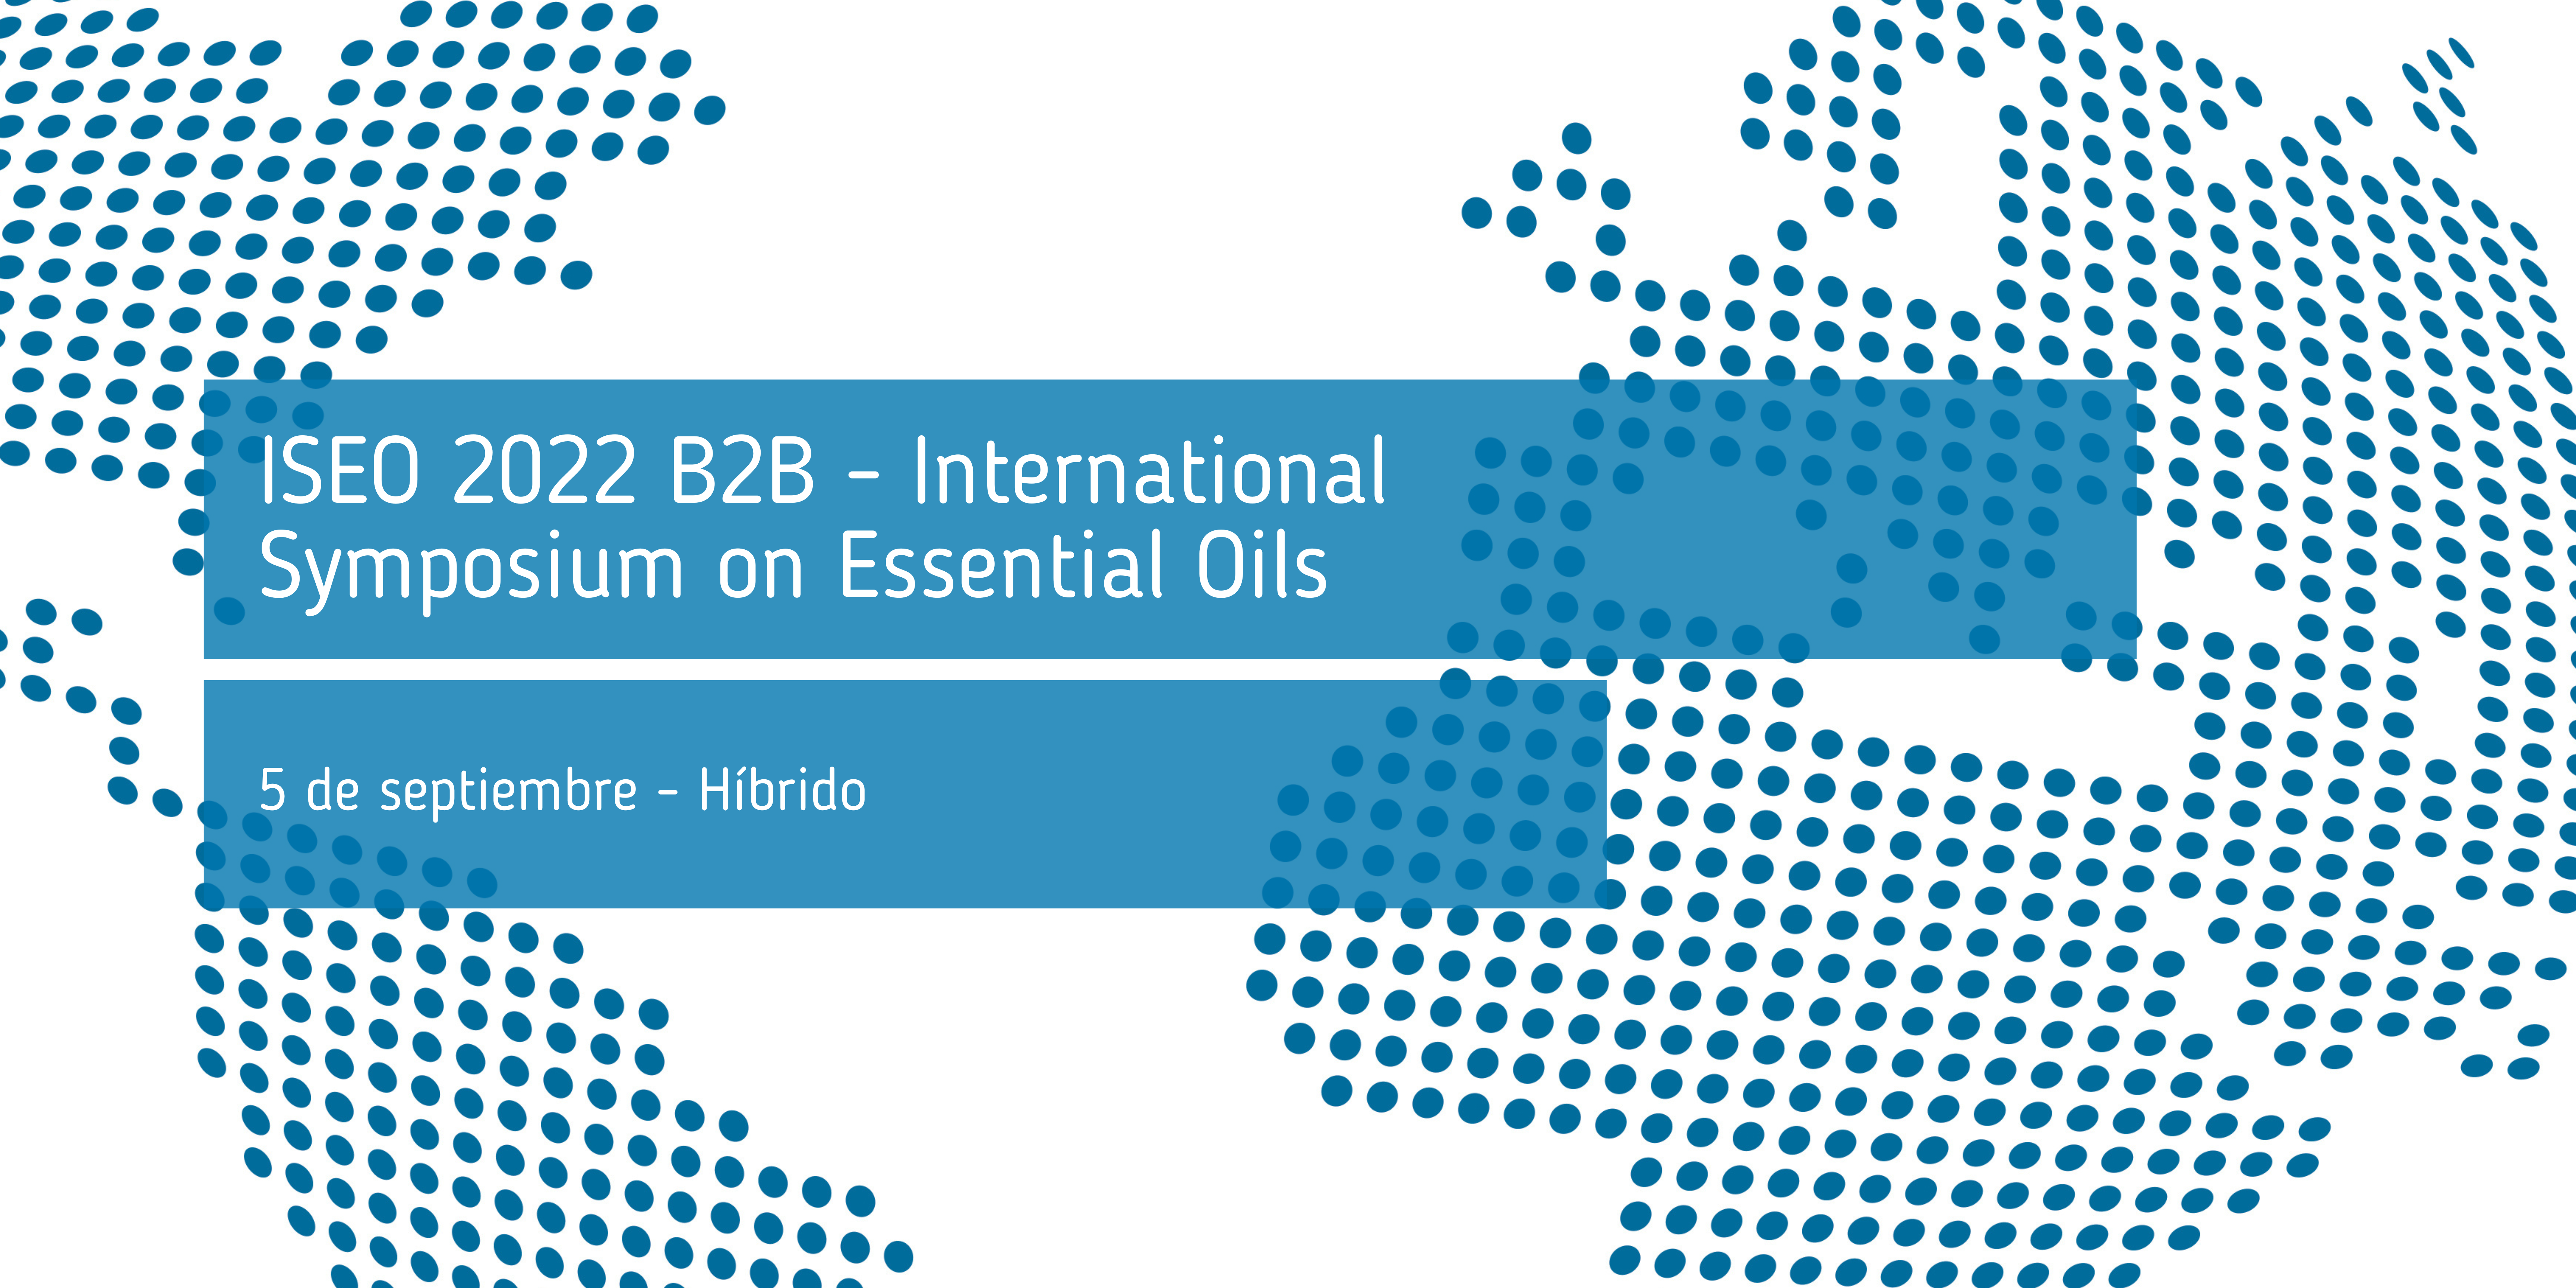 ISEO_2022_B2B_International_Symposium_on_Essential_Oils